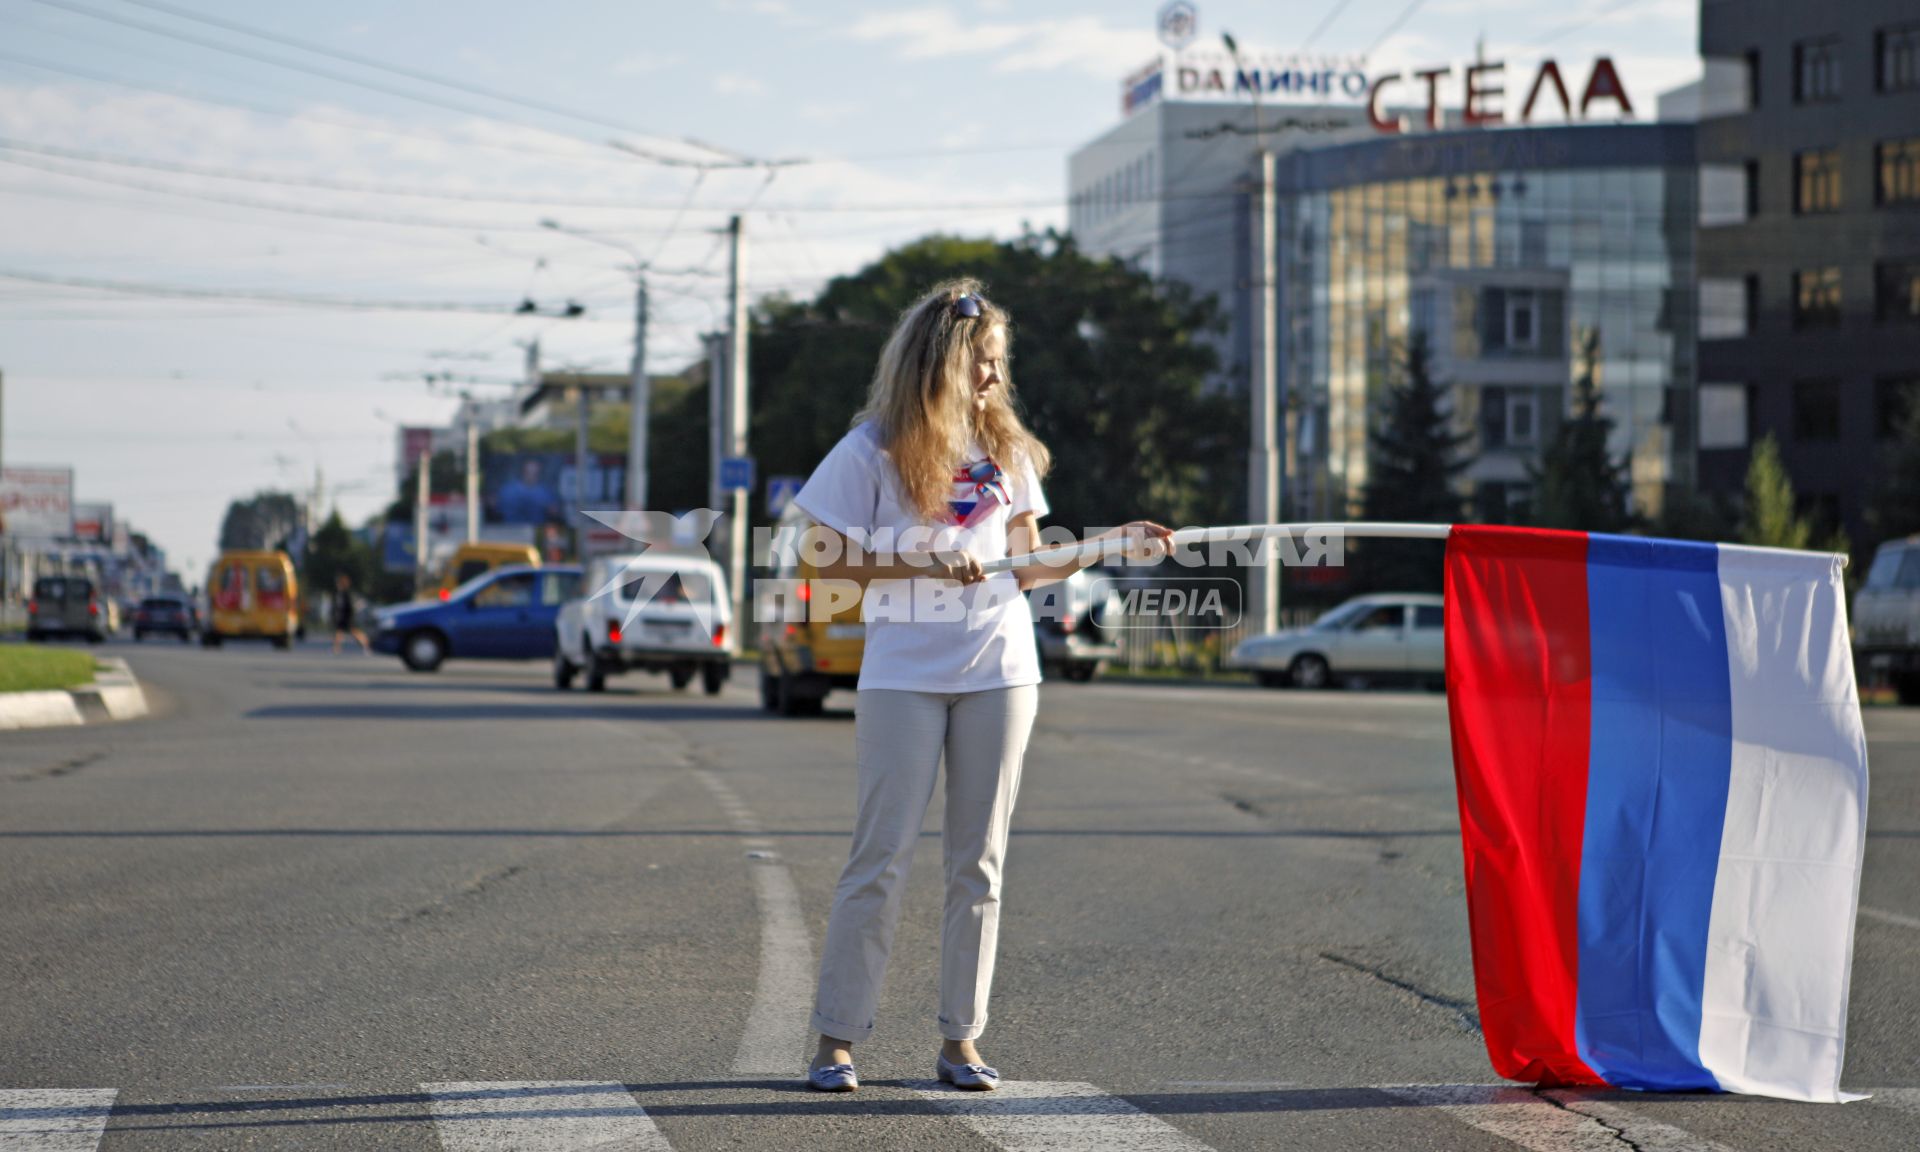 Волонтеры поздравляют автомобилистов с днем флага. На снимке: девушка с российским флагом в руках.